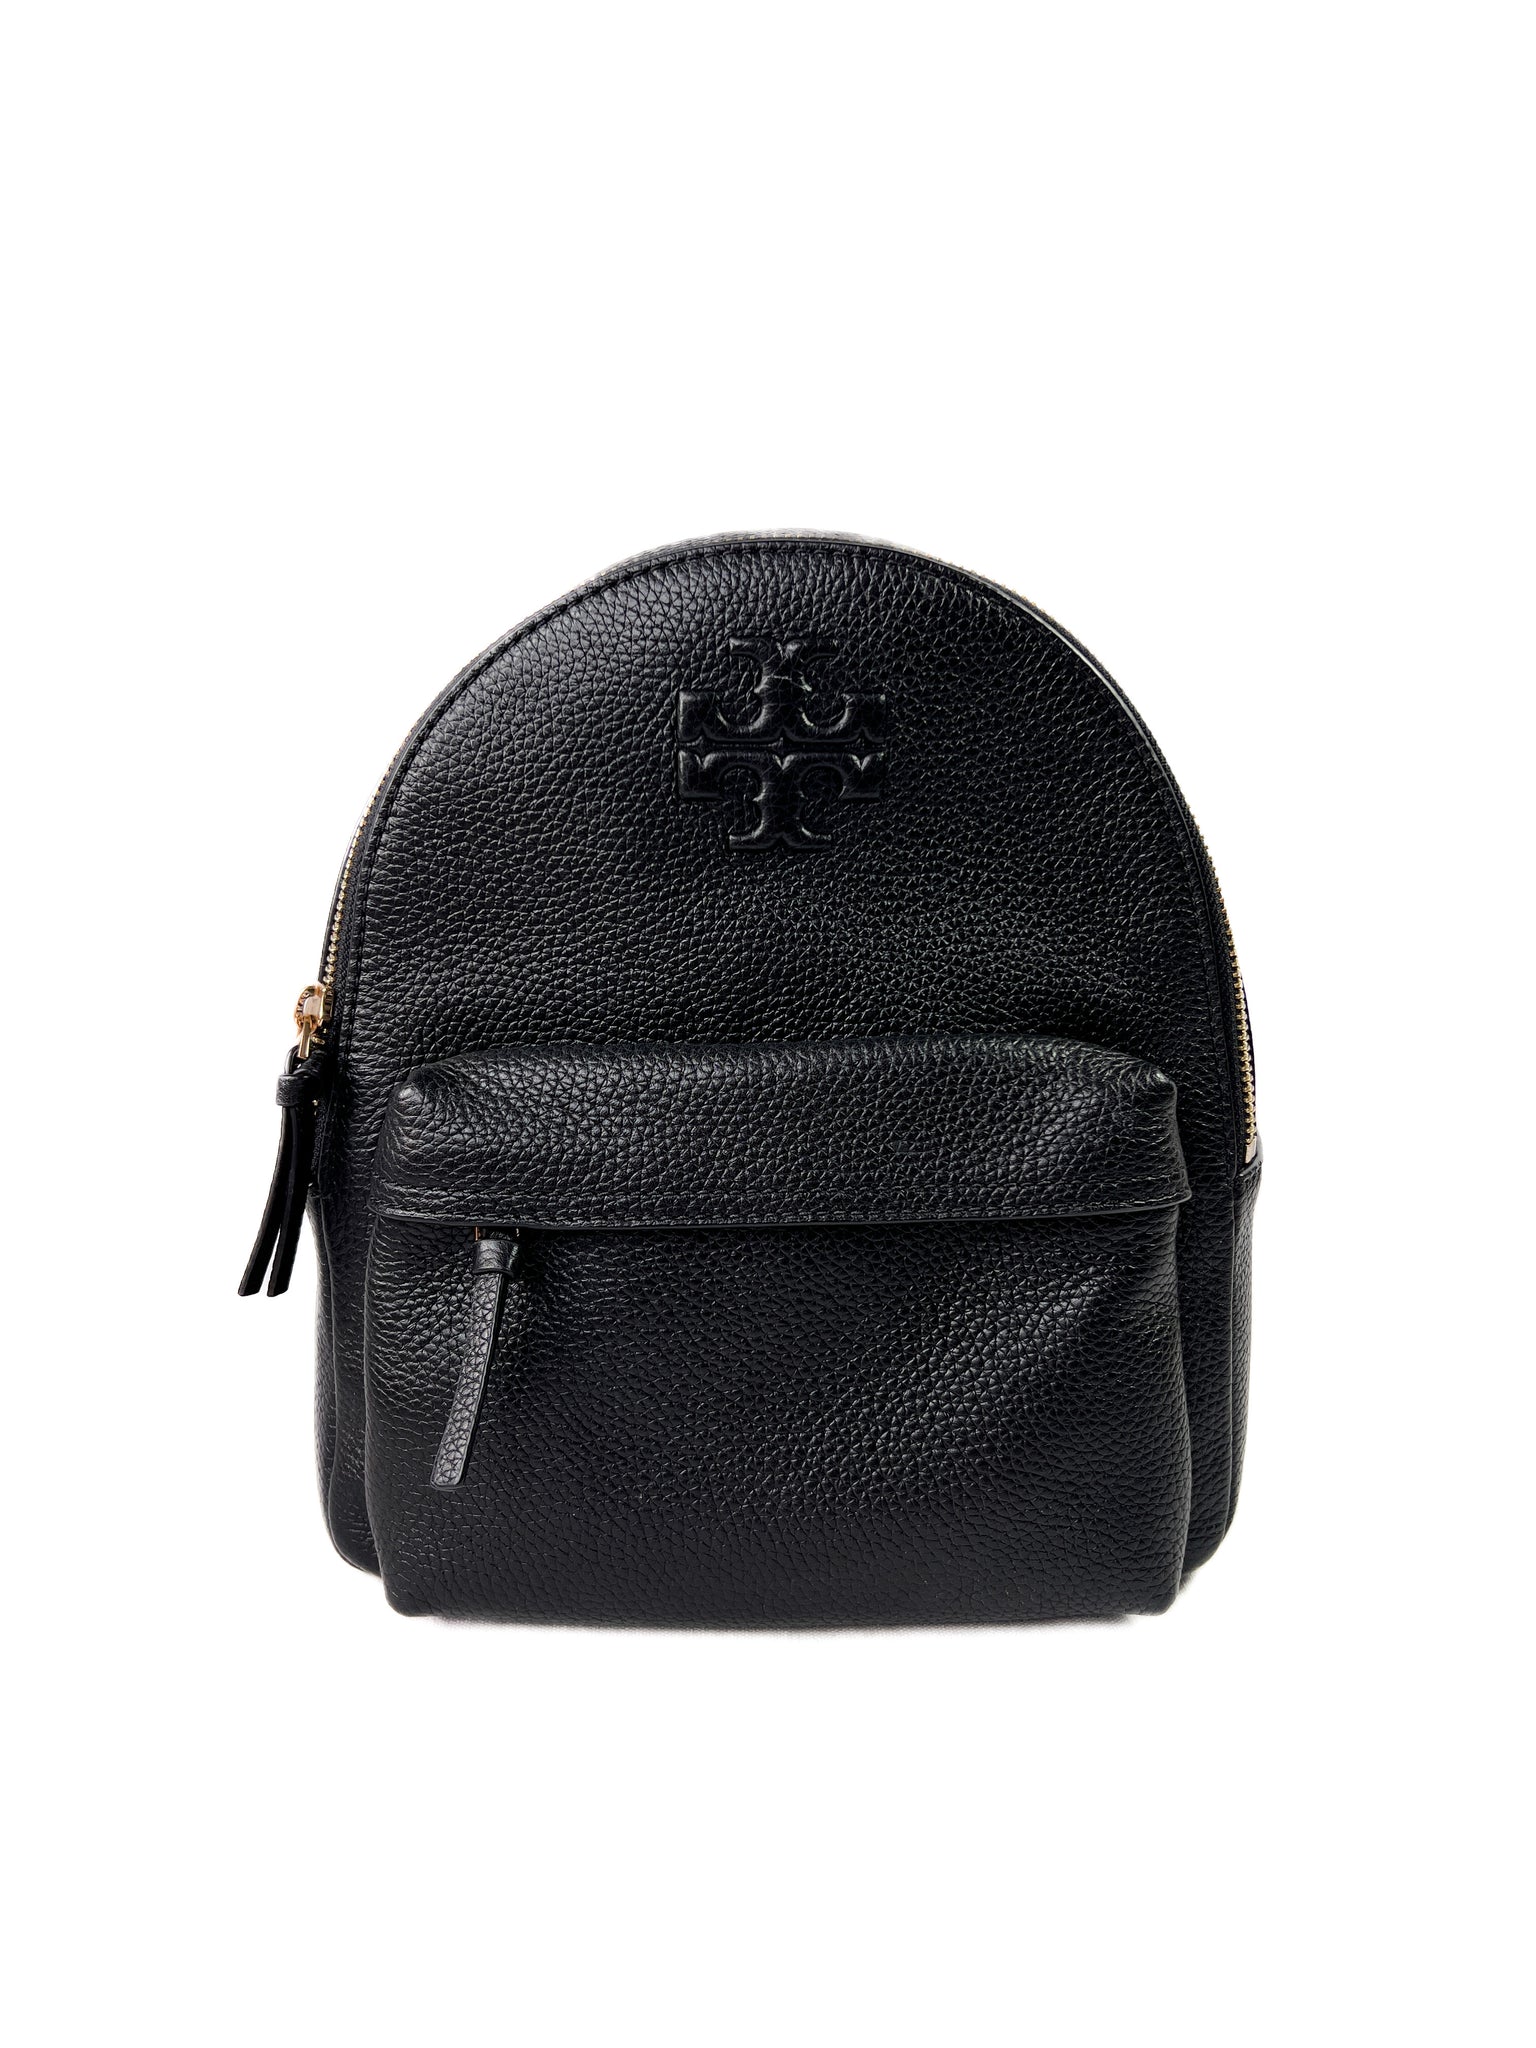 Tory Burch black leather Thea mini backpack – My Girlfriend's